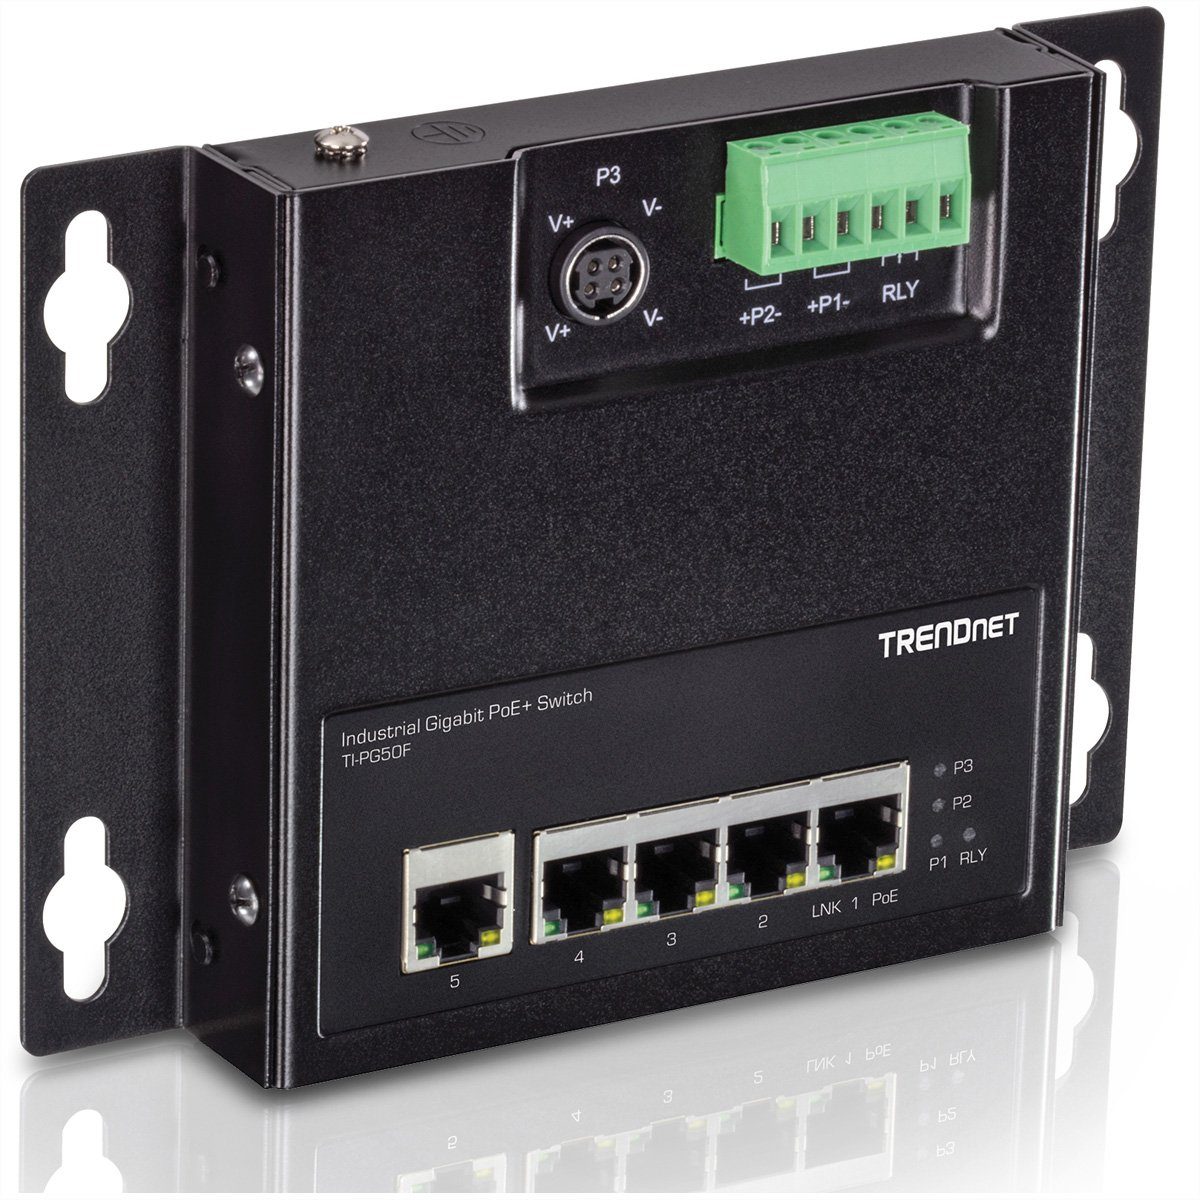 TI-PG50F (wandmontierbar) Trendnet PoE+ Access Industrial Front 5-Port Switch Netzwerk-Switch Gigabit